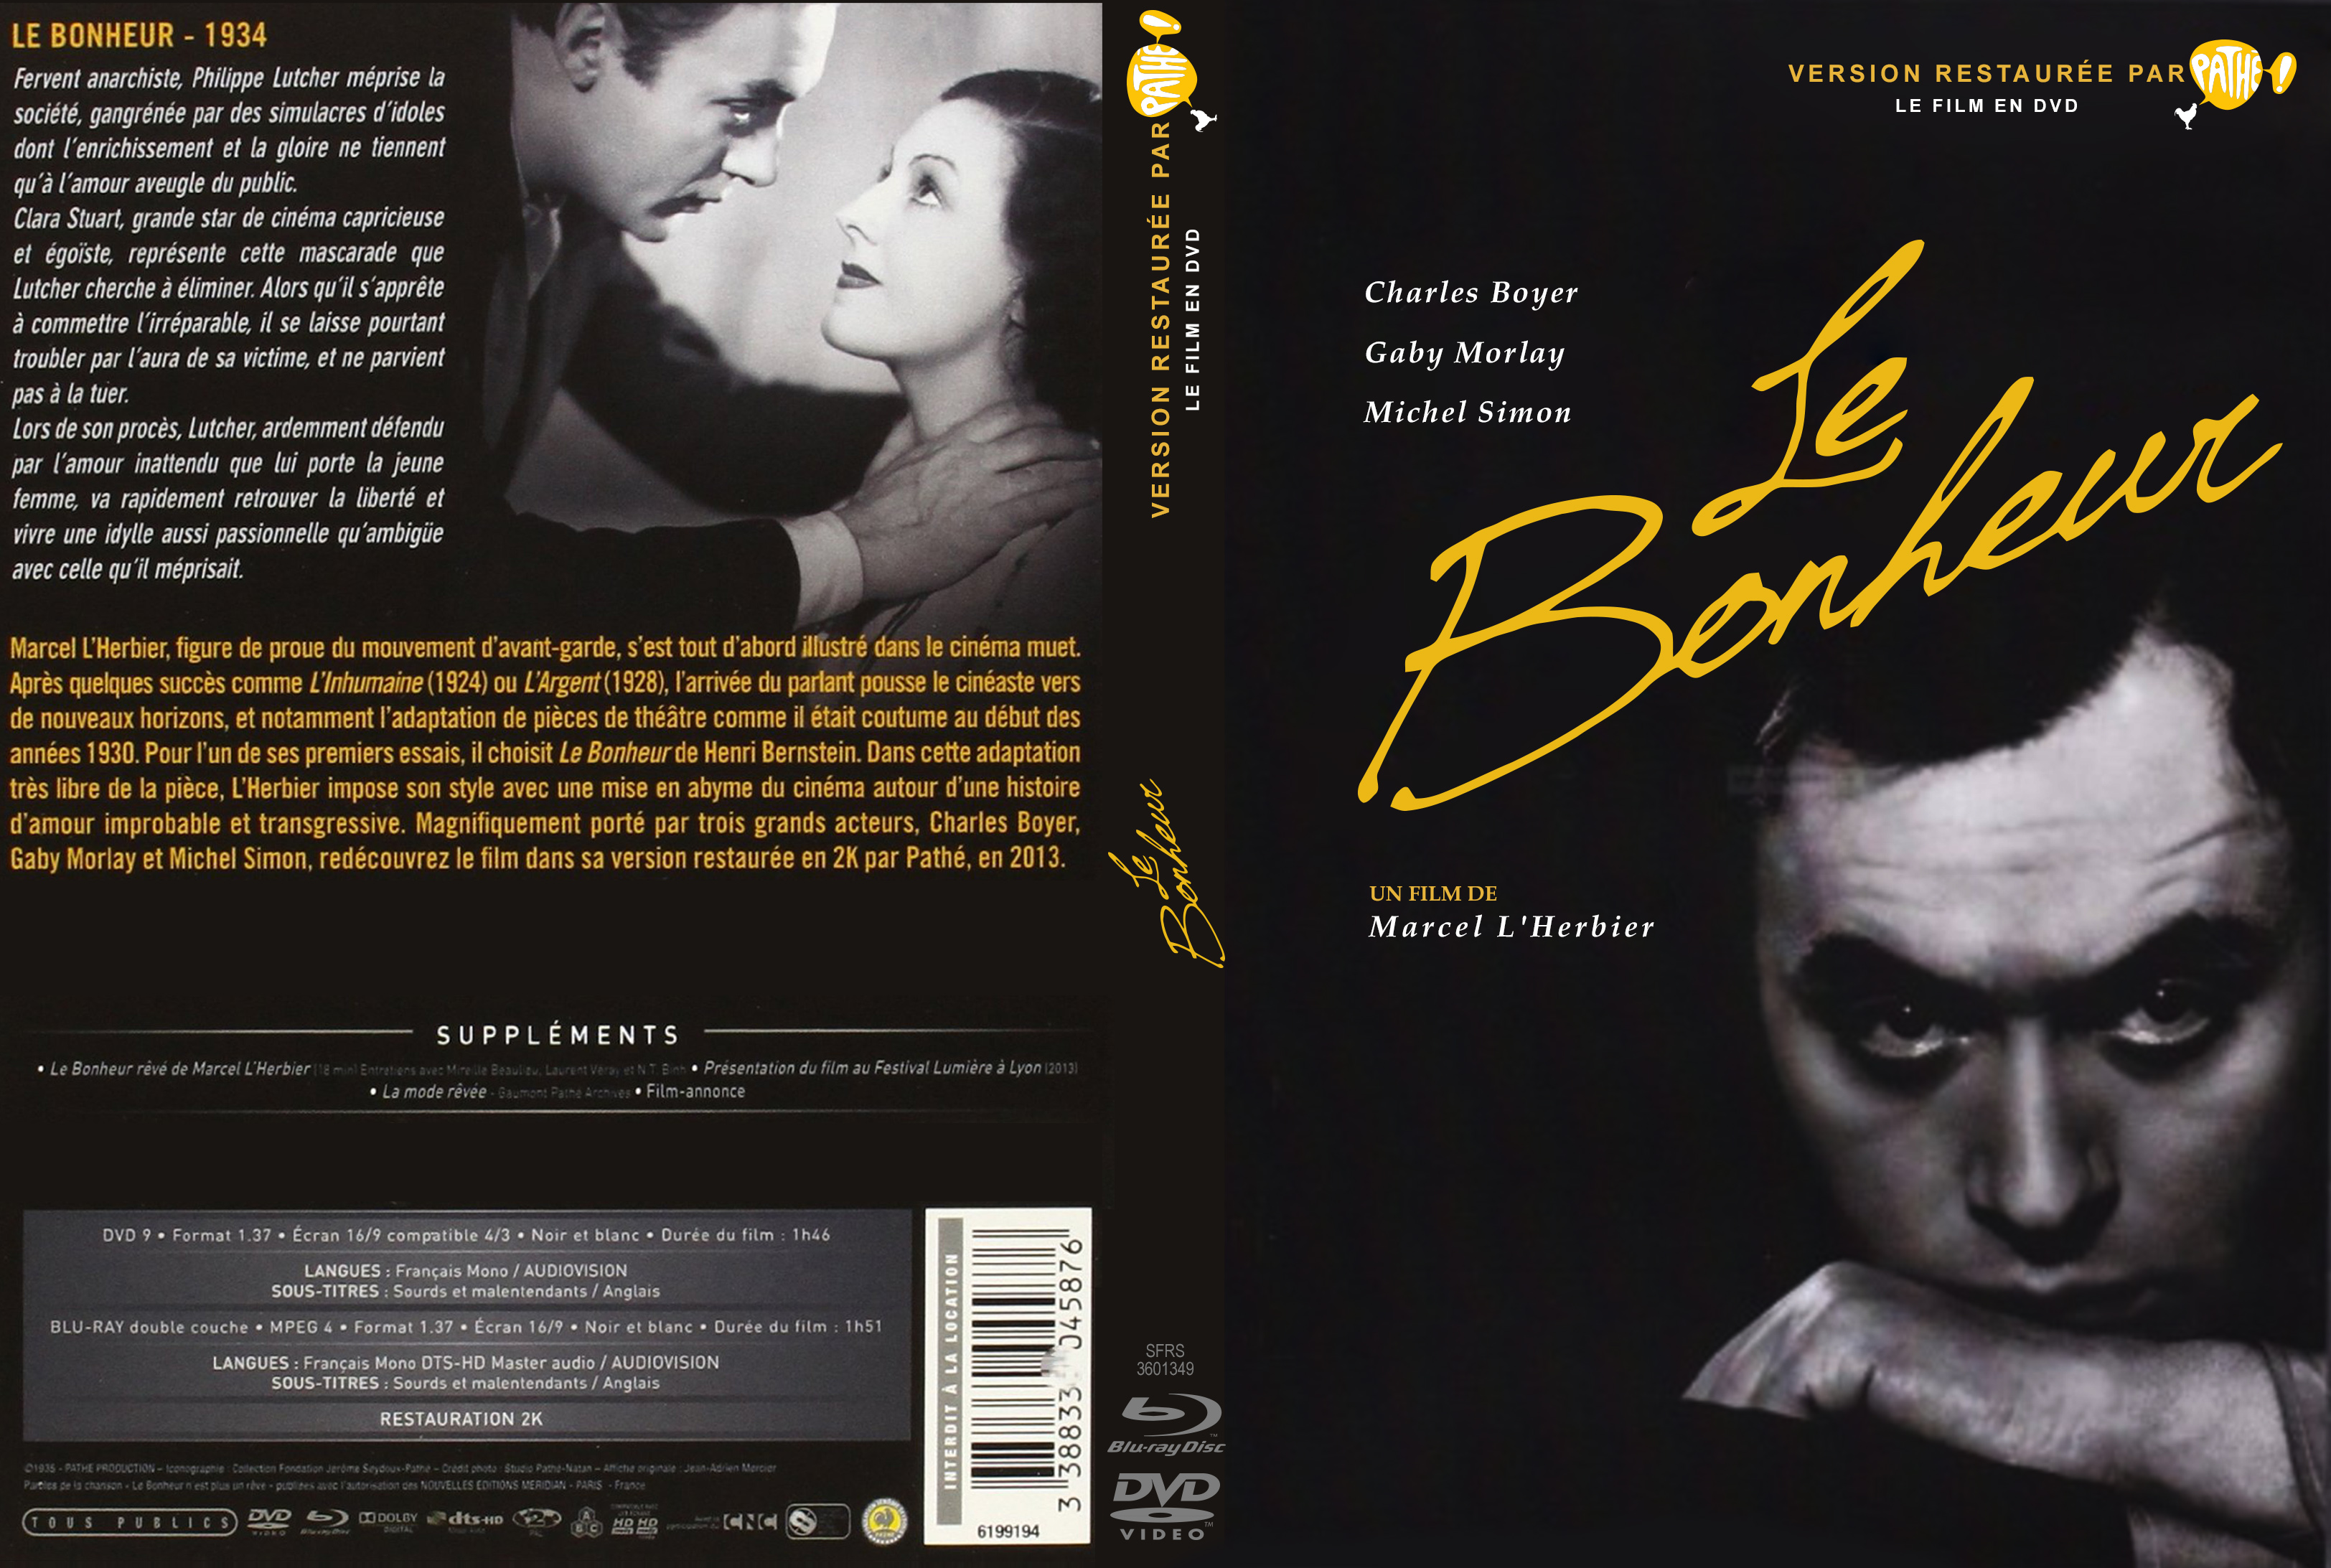 Jaquette DVD Le bonheur custom